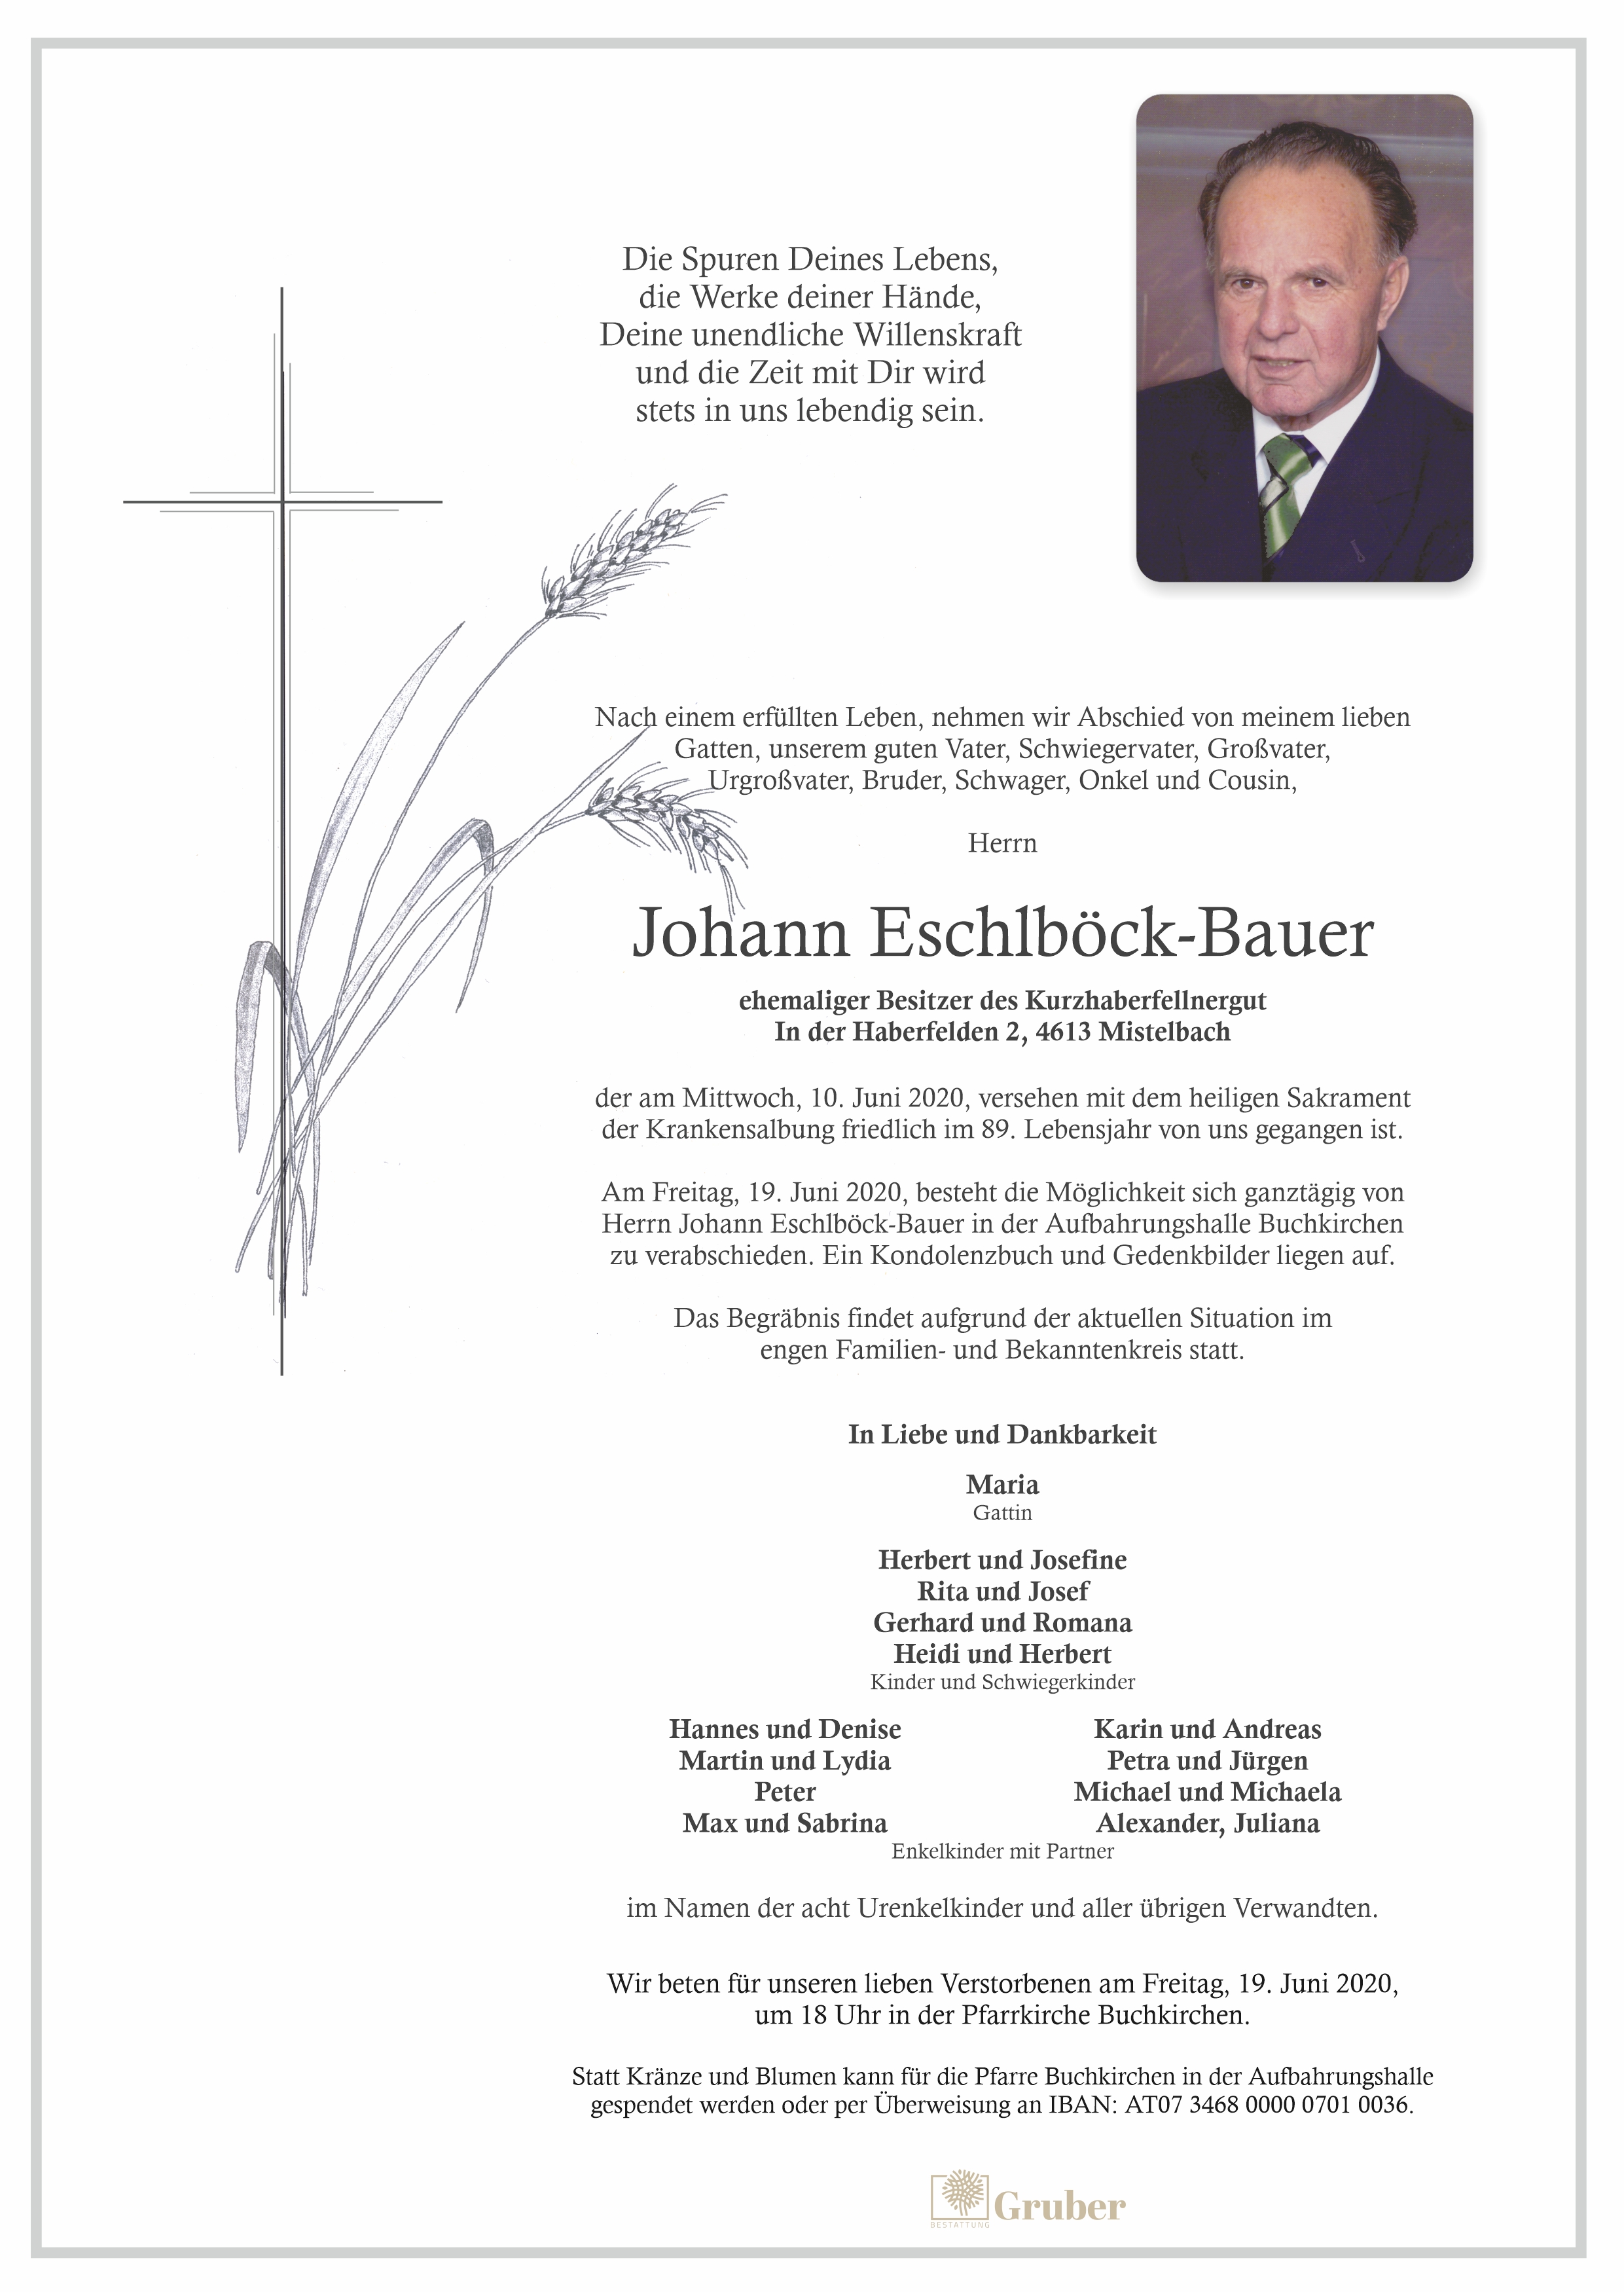 Johann Eschlböck-Bauer (Buchkirchen)